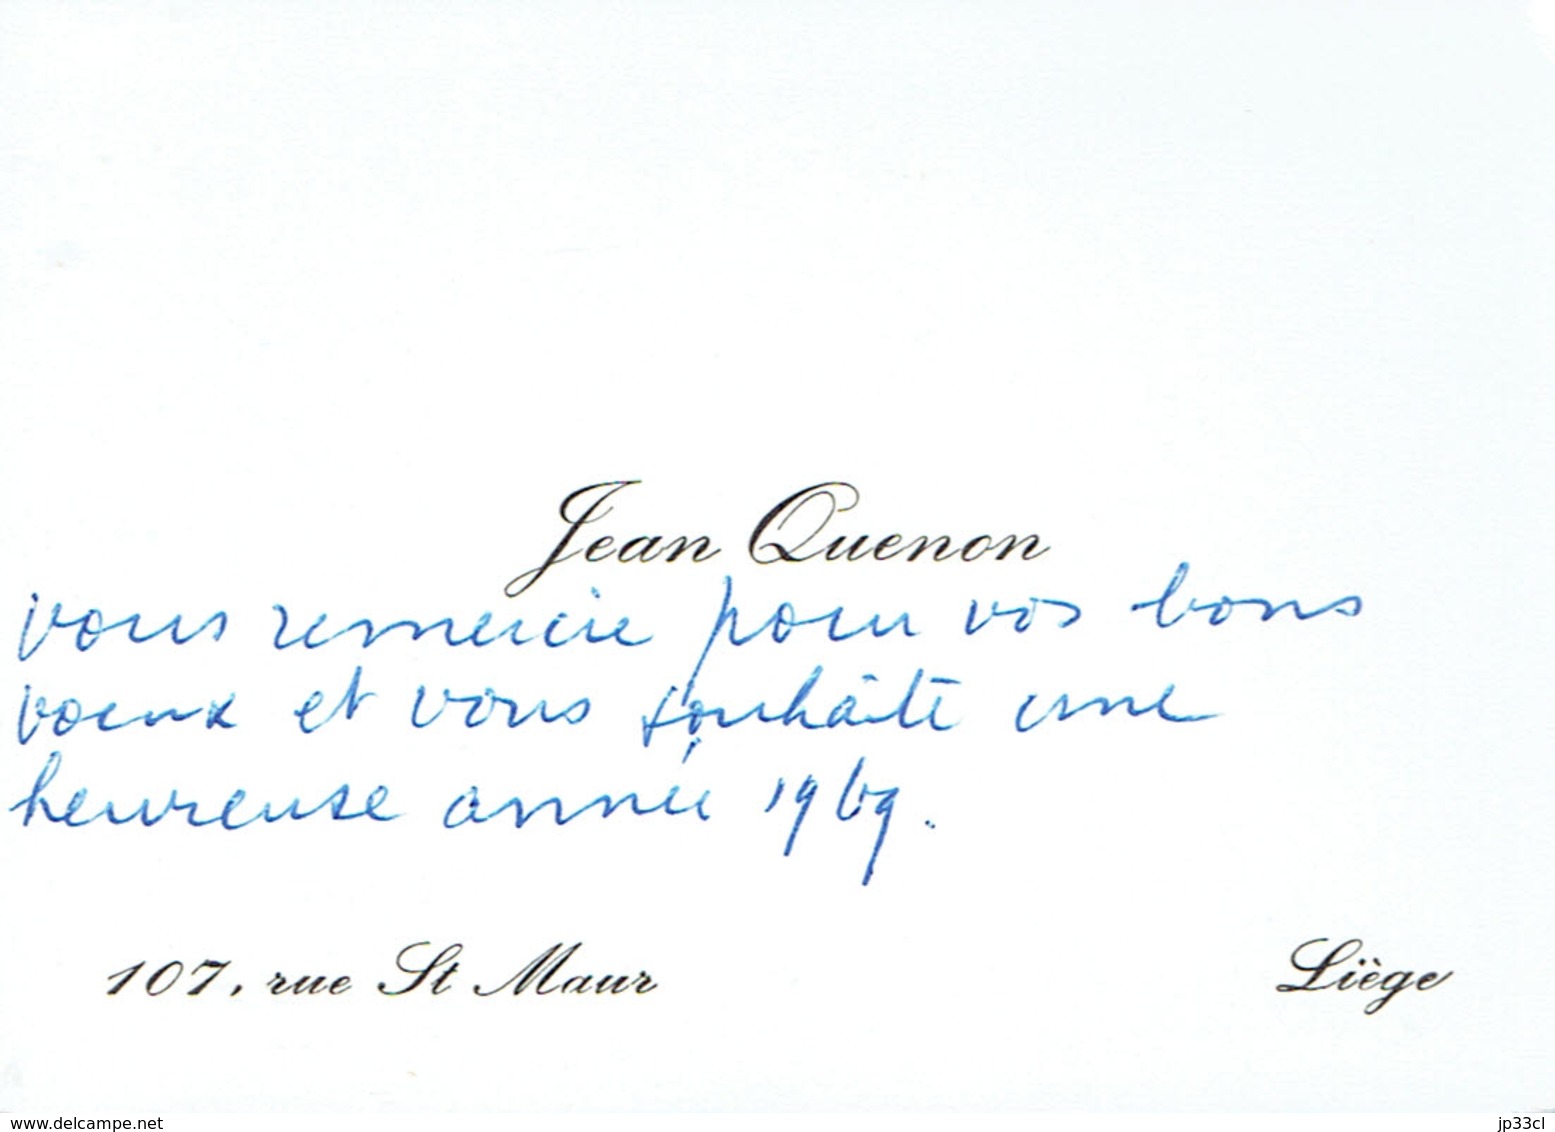 Ancienne Carte De Visite Autographe De Jean Quenon, Professeur à L'ULG, Rue St Maur, Liège (vers 1968) - Visitekaartjes